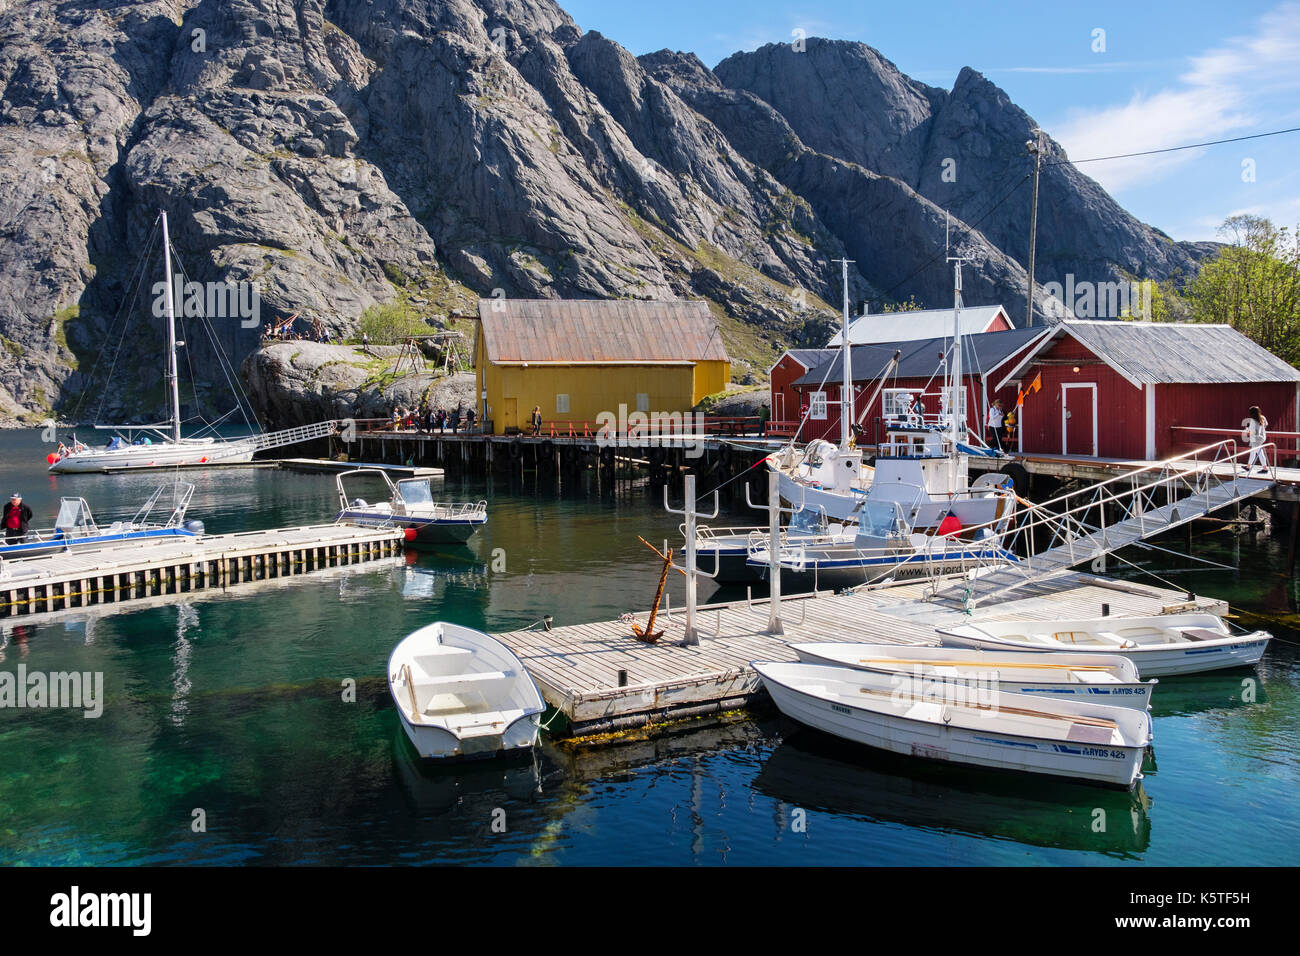 Scena di vita portuale nello storico villaggio di pescatori di Nusfjord, Flakstadøya, Isole Lofoten, Nordland, Norvegia e Scandinavia Foto Stock